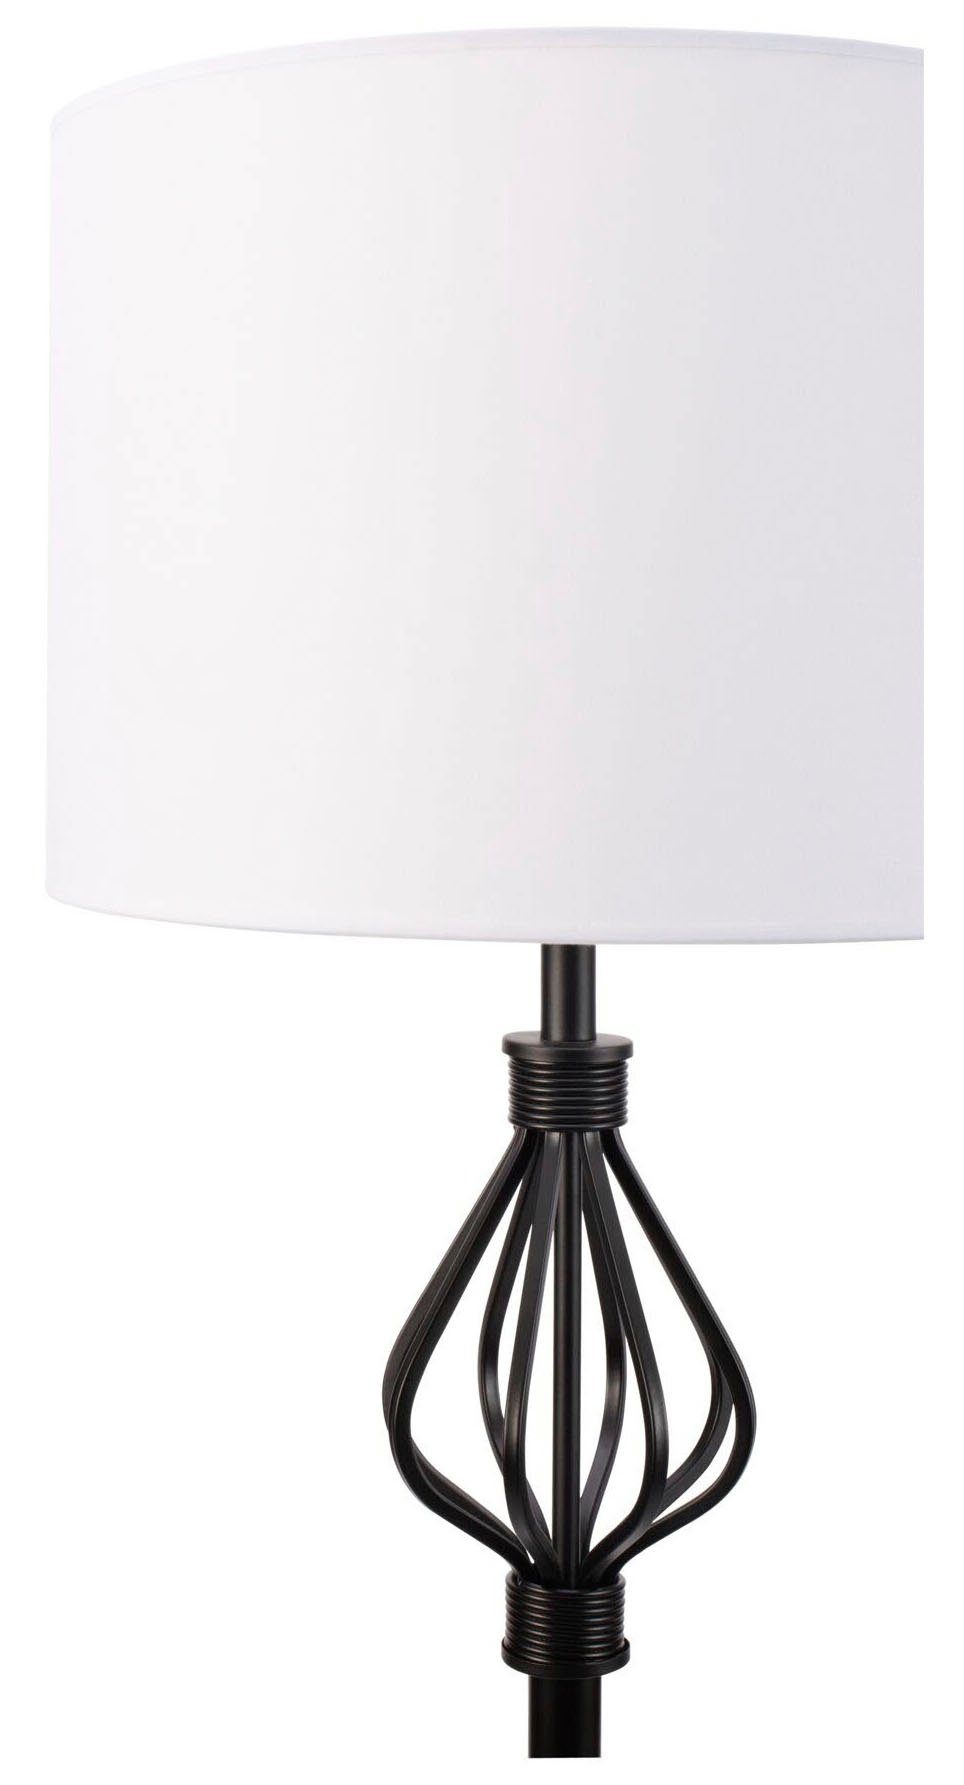 Pauleen Stehlampe Grand Beauty max20W 230V Weiß/Schwarz Leuchtmittel, Stoff/Metall, Ein-/Ausschalter, ohne E27